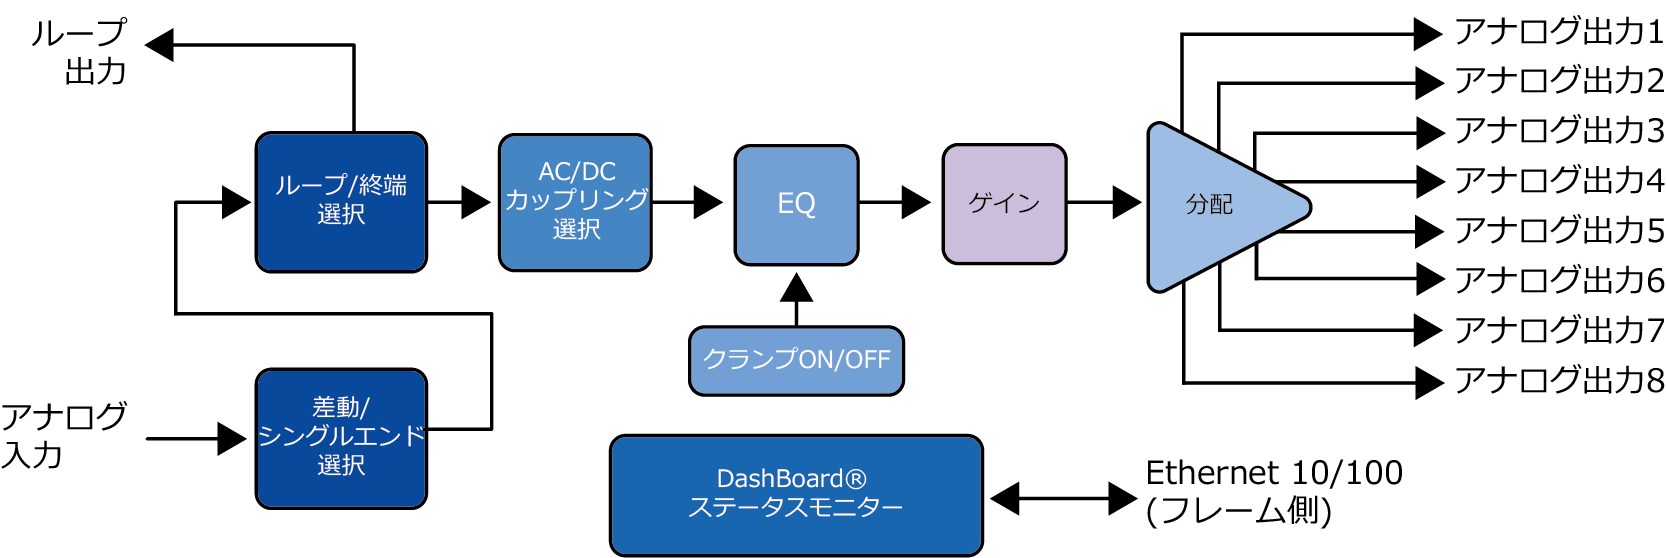 OG-5310-ADA-1X8 ブロック図